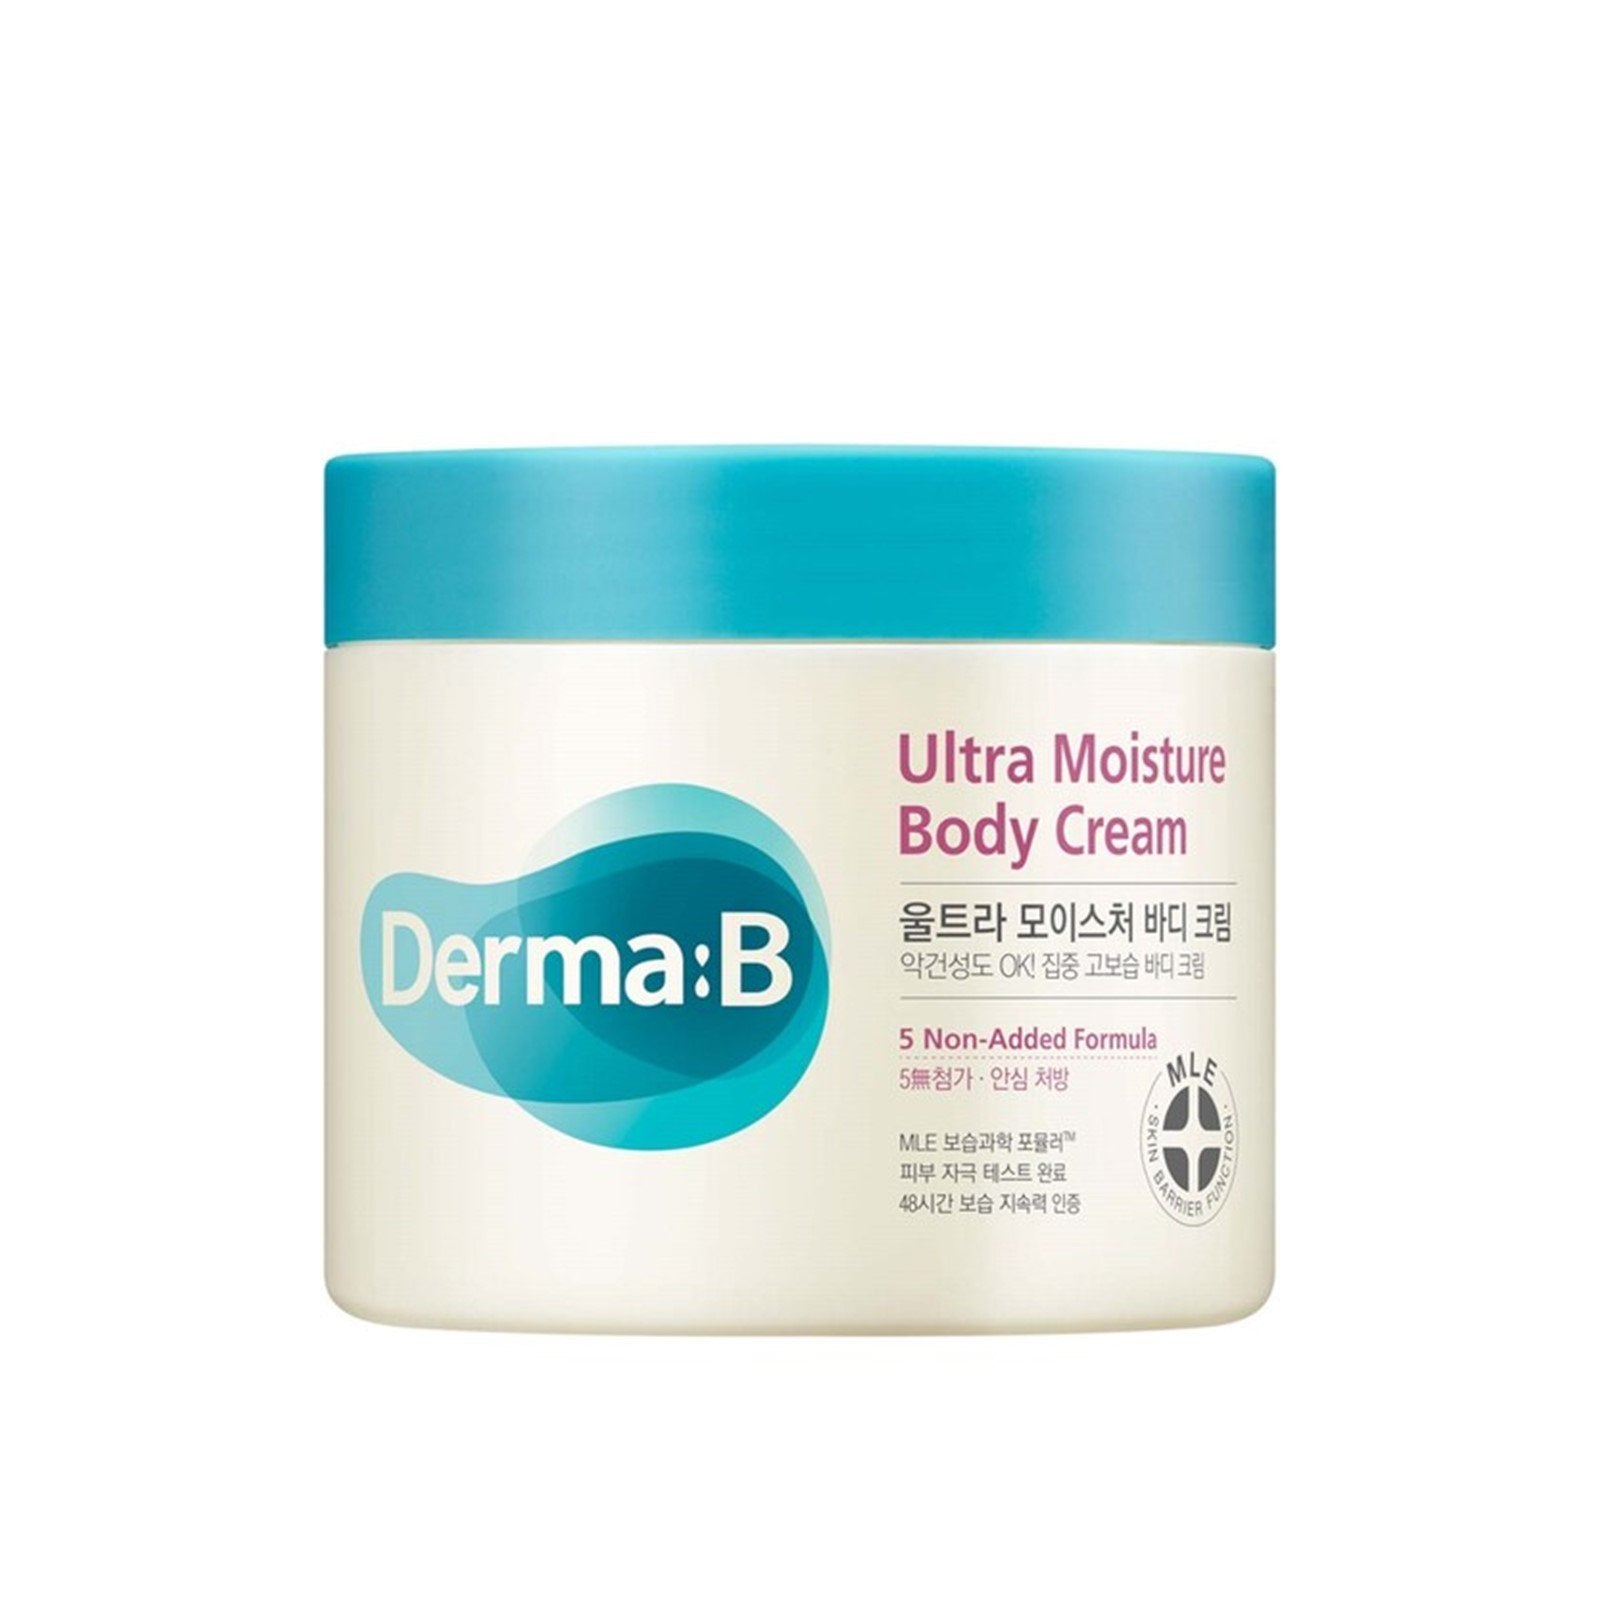 derma-b-ultra-moisture-body-cream-430ml.jpg